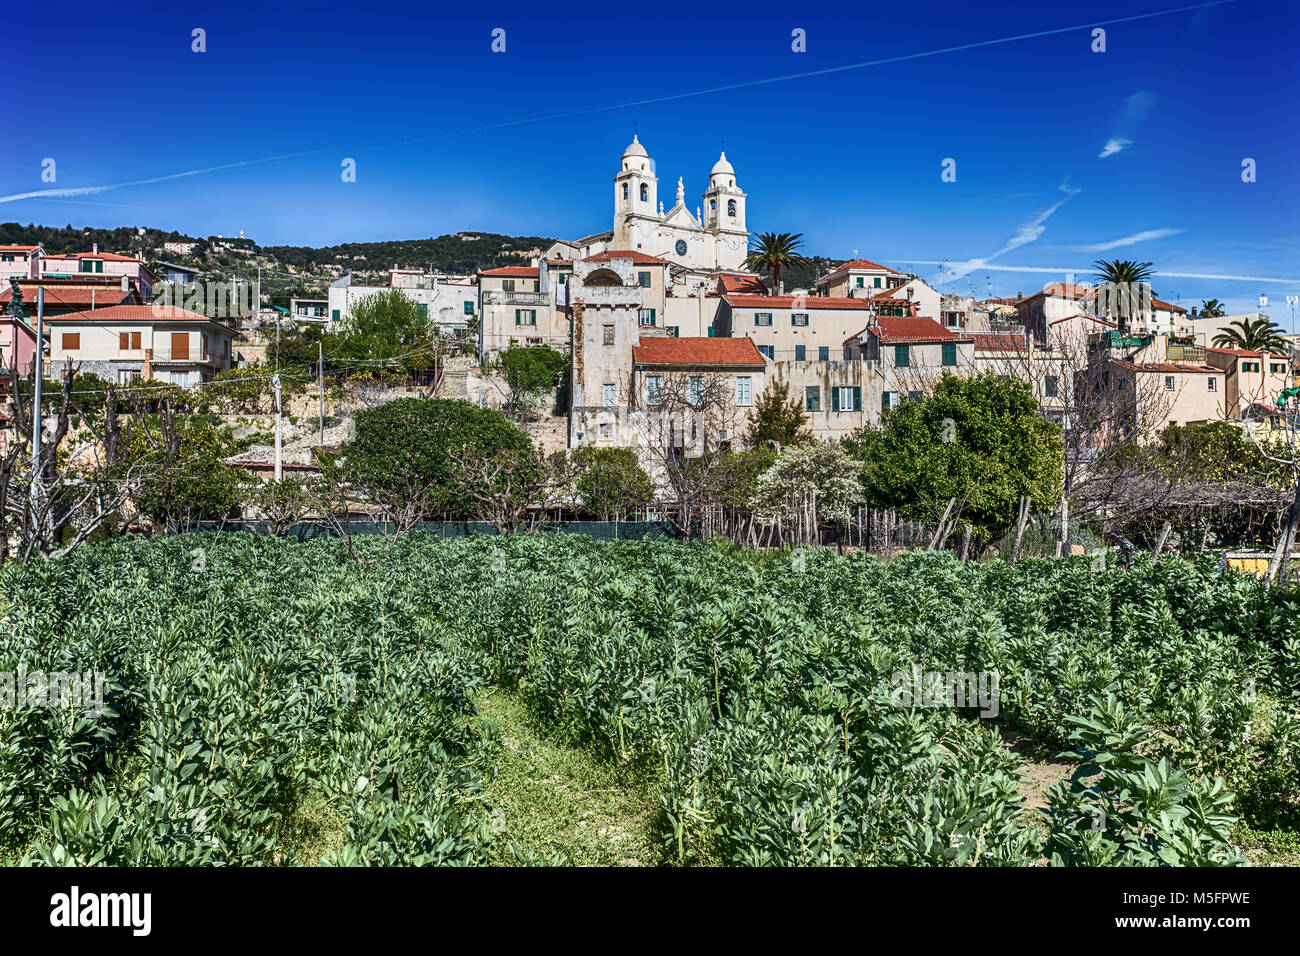 Vista della città mare villaggio di Borgio Verezzi, Savona, Italia, riviera ligure, centro città Foto Stock